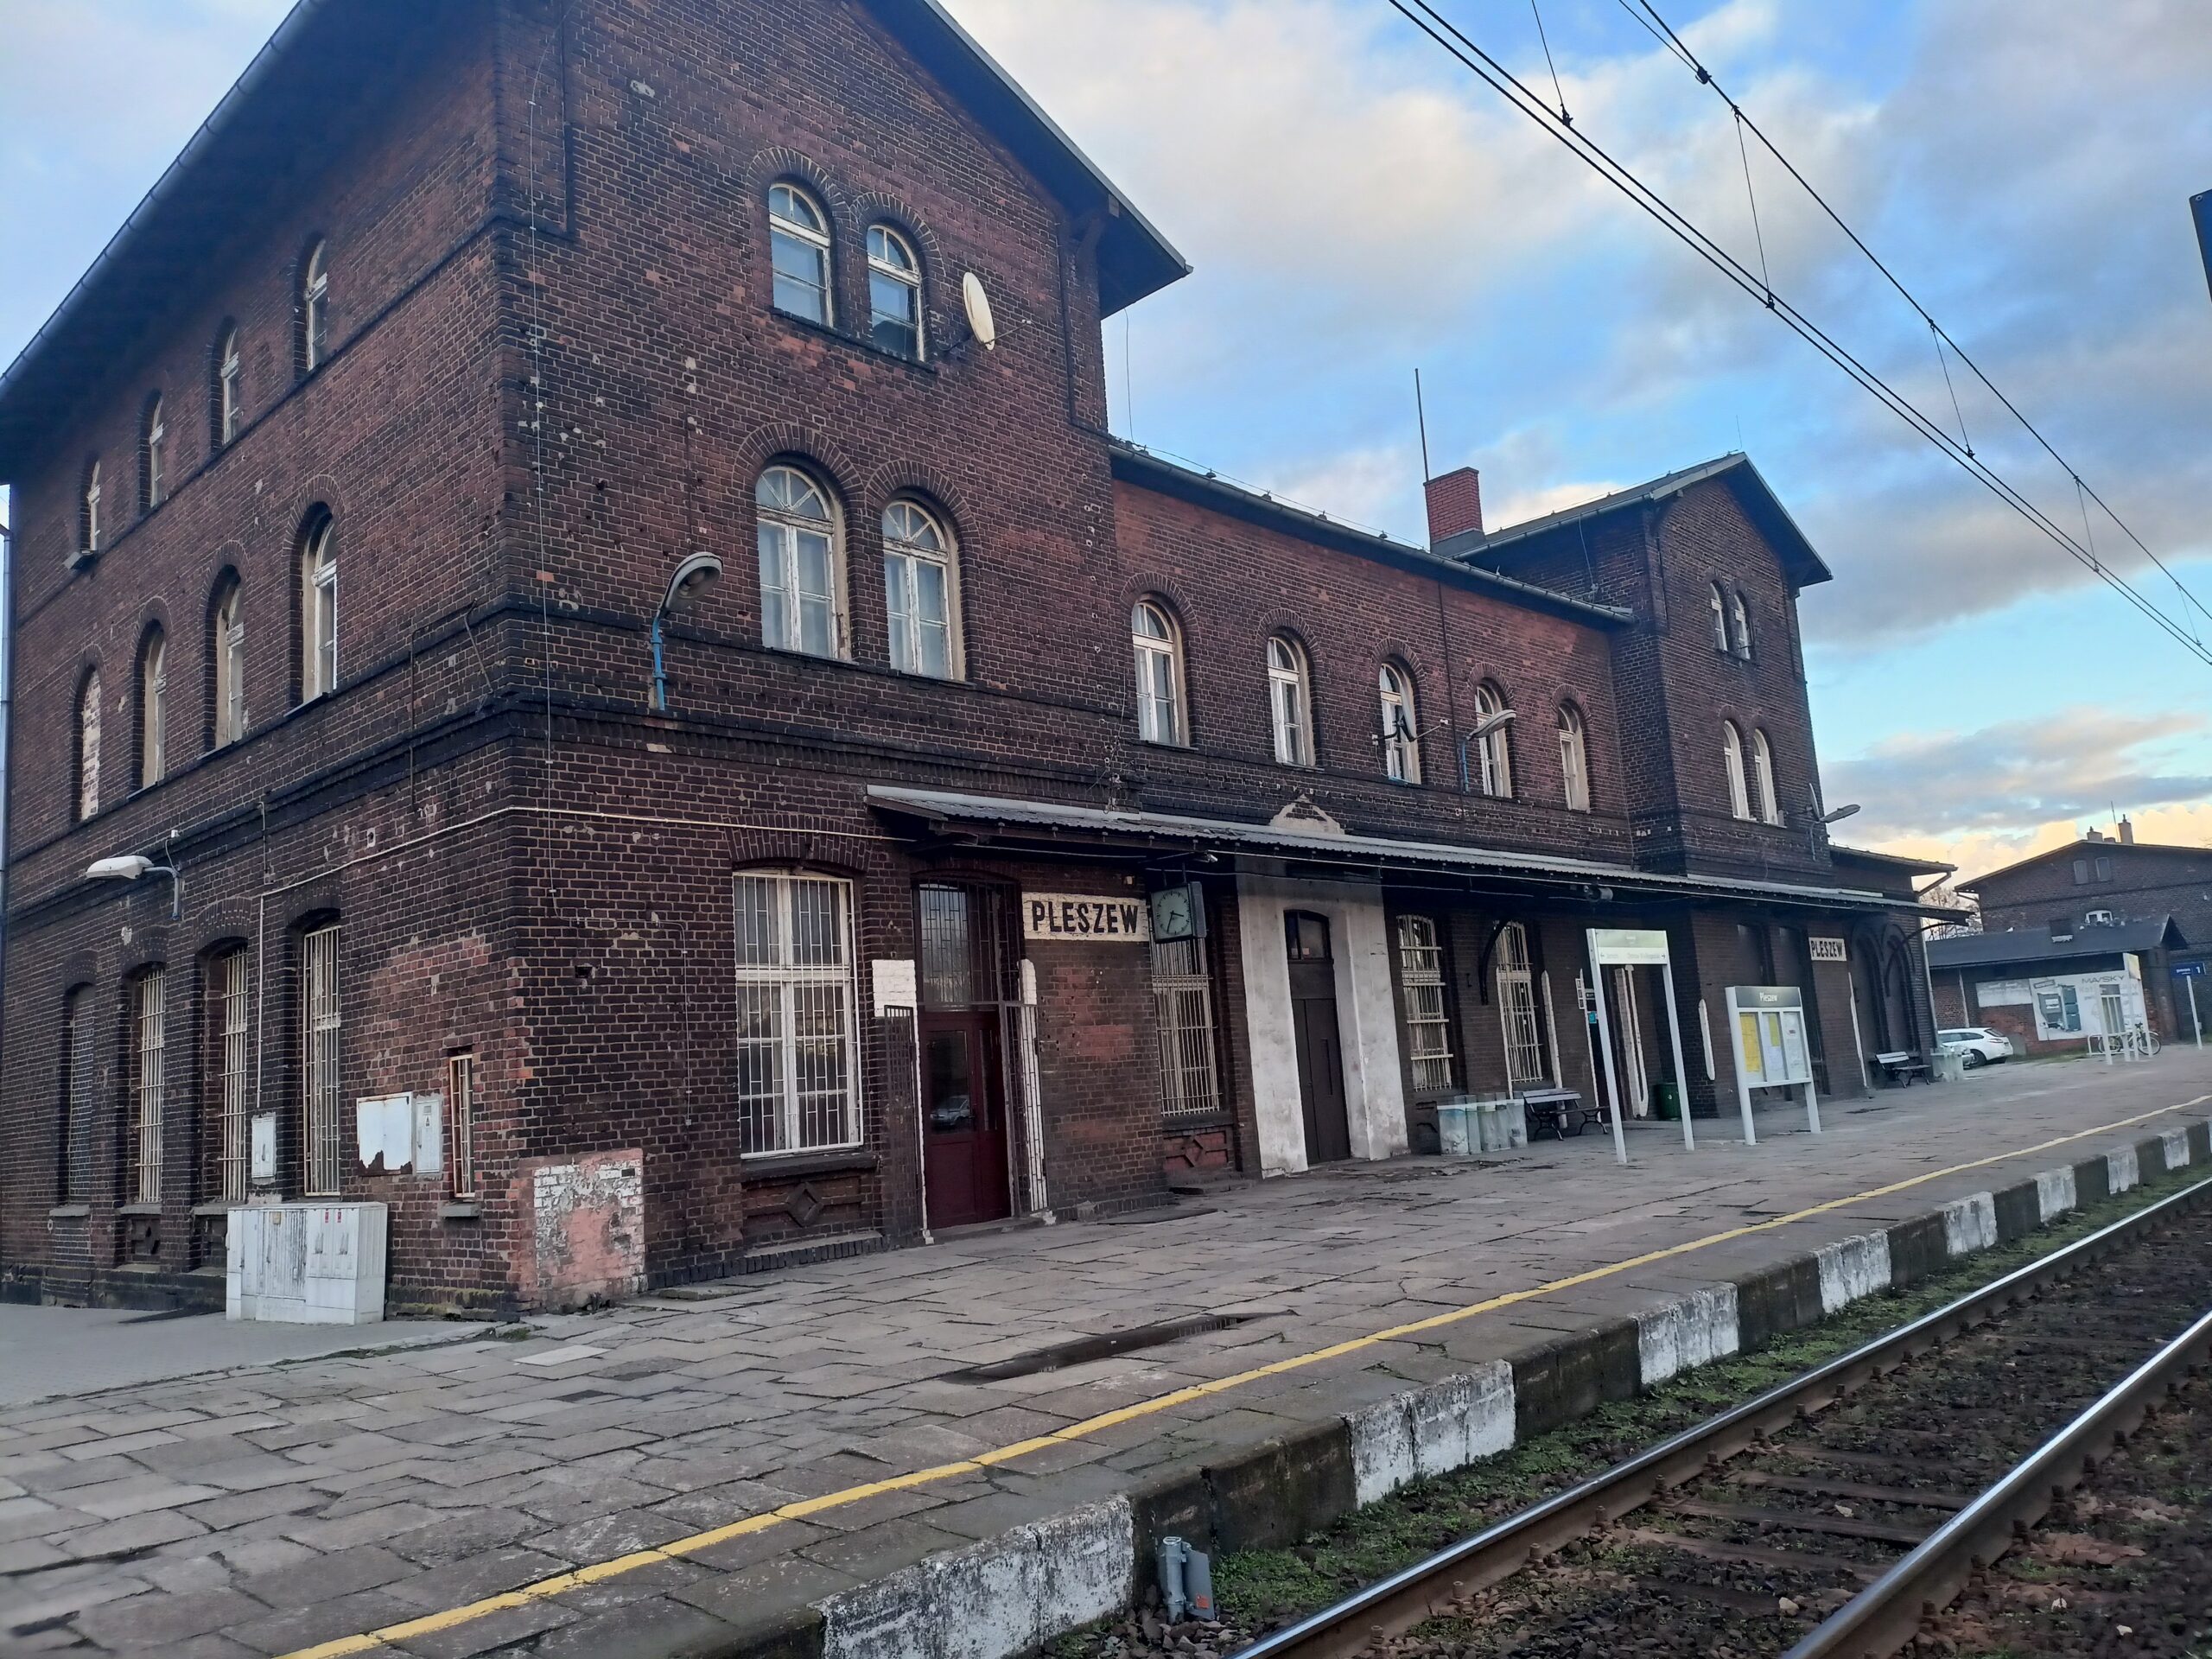 Zdjęcie przedstawia budynek dworca kolejowego w Kowalewie - stacja Pleszew.